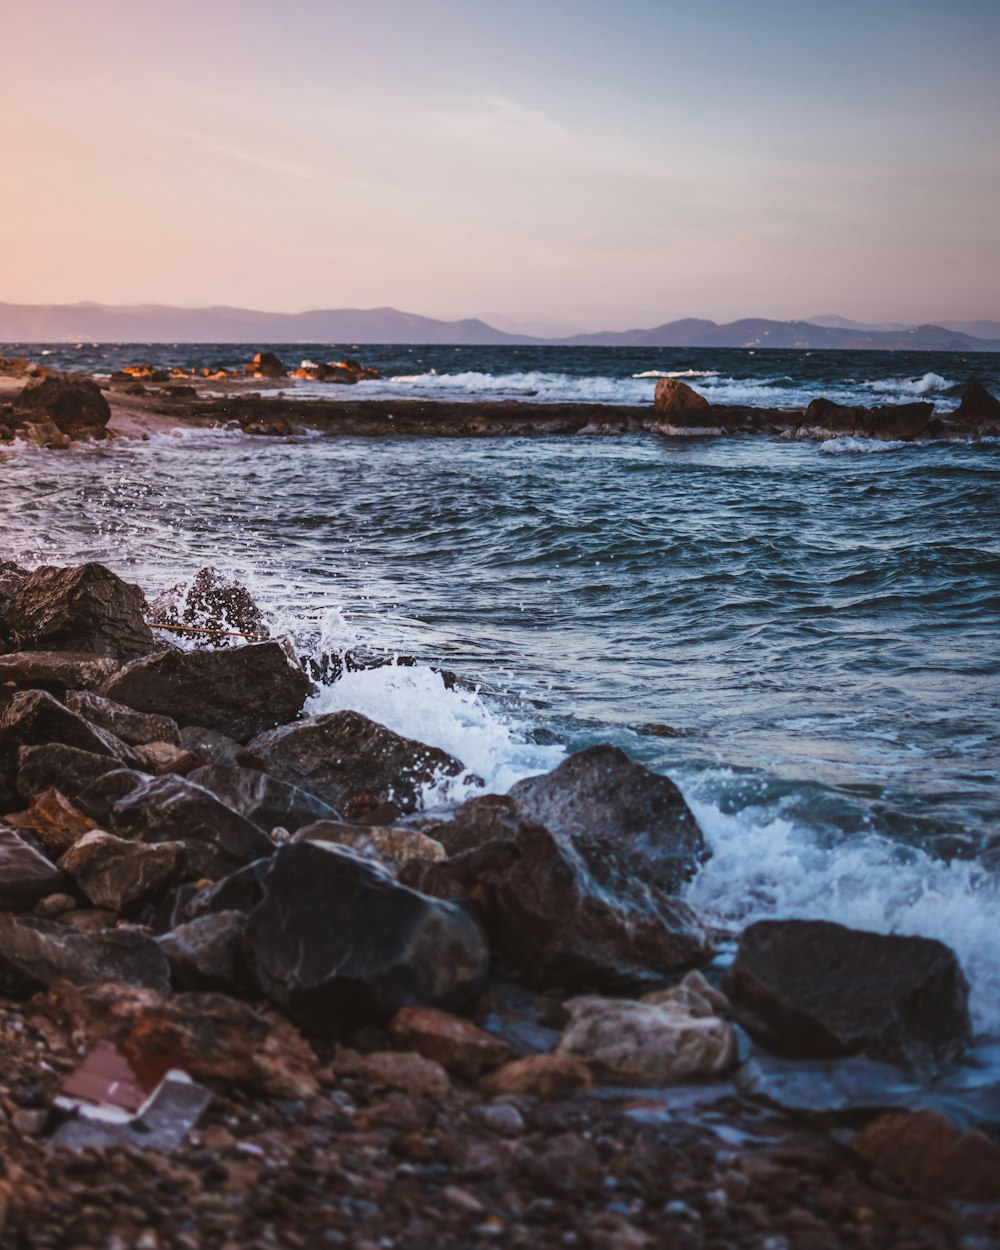 rochas marrons na costa do mar durante o dia